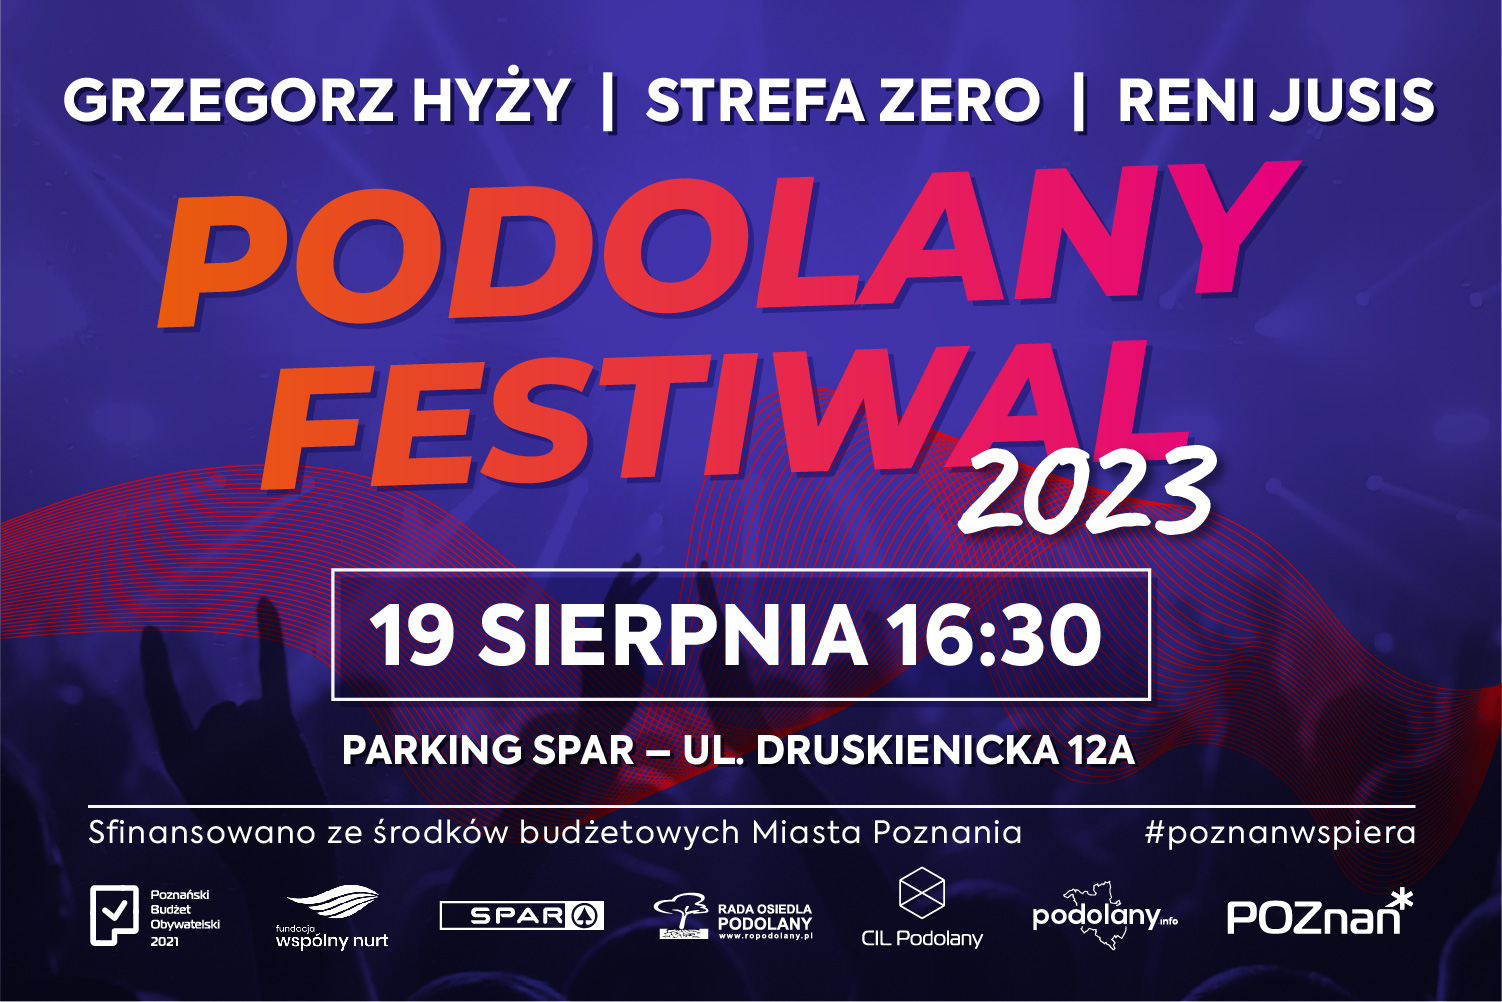 Podolany Festiwal 2023